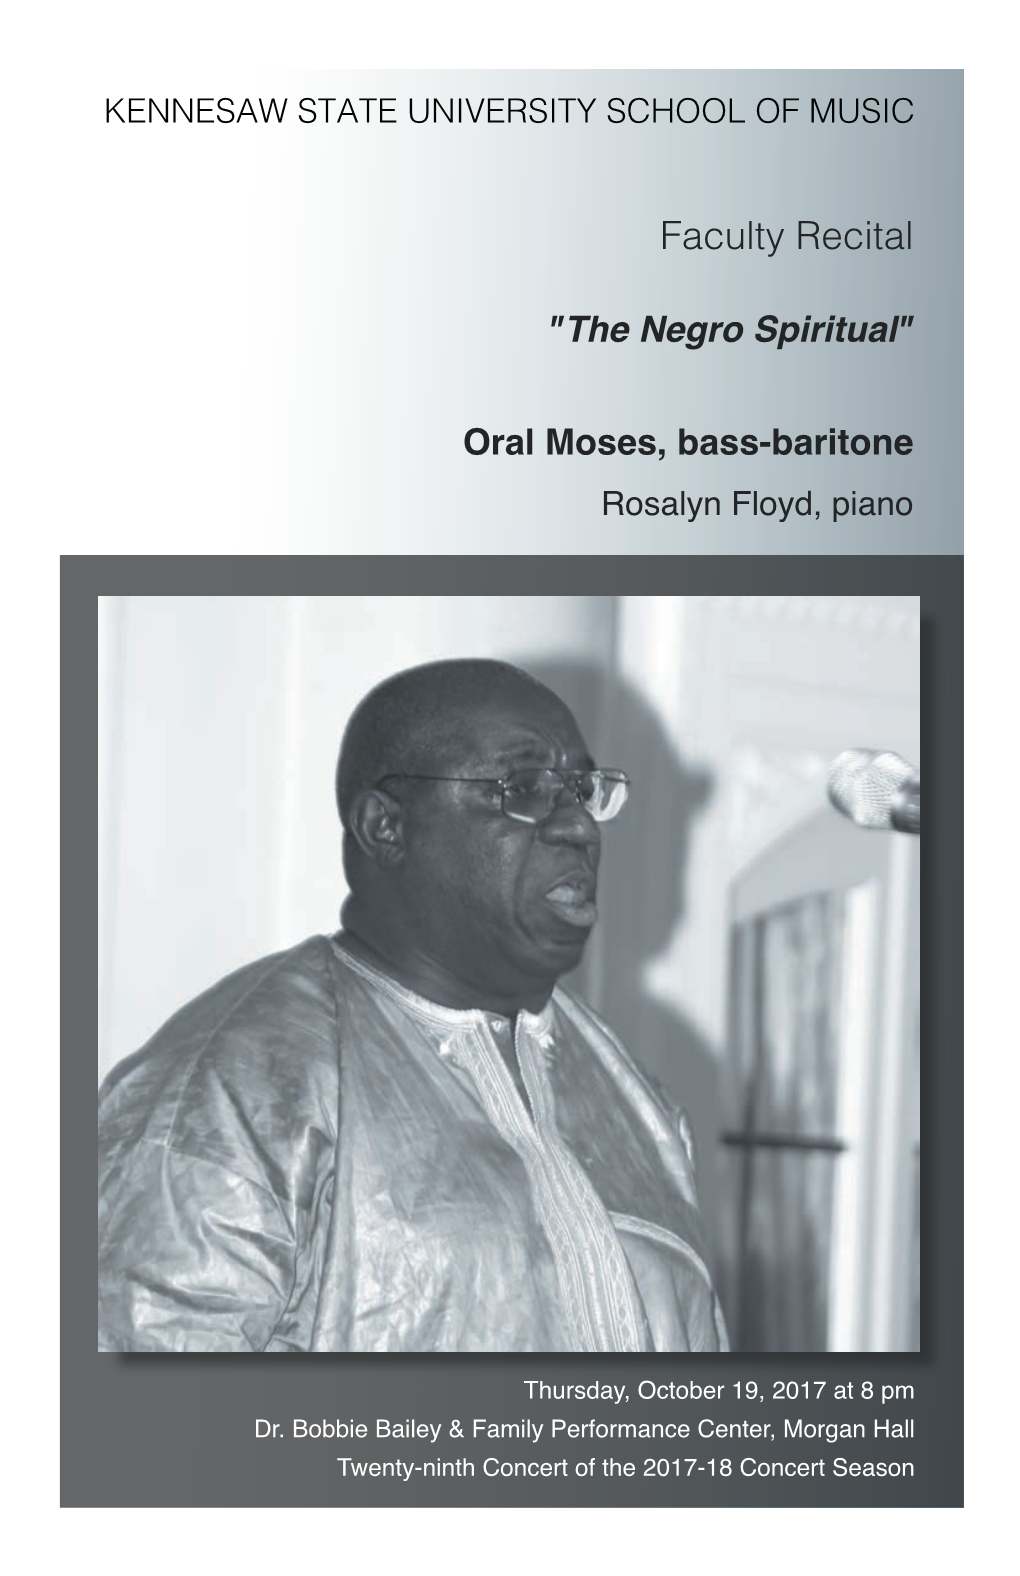 Faculty Recital: Oral Moses, Bass-Baritone, "The Negro Spiritual"